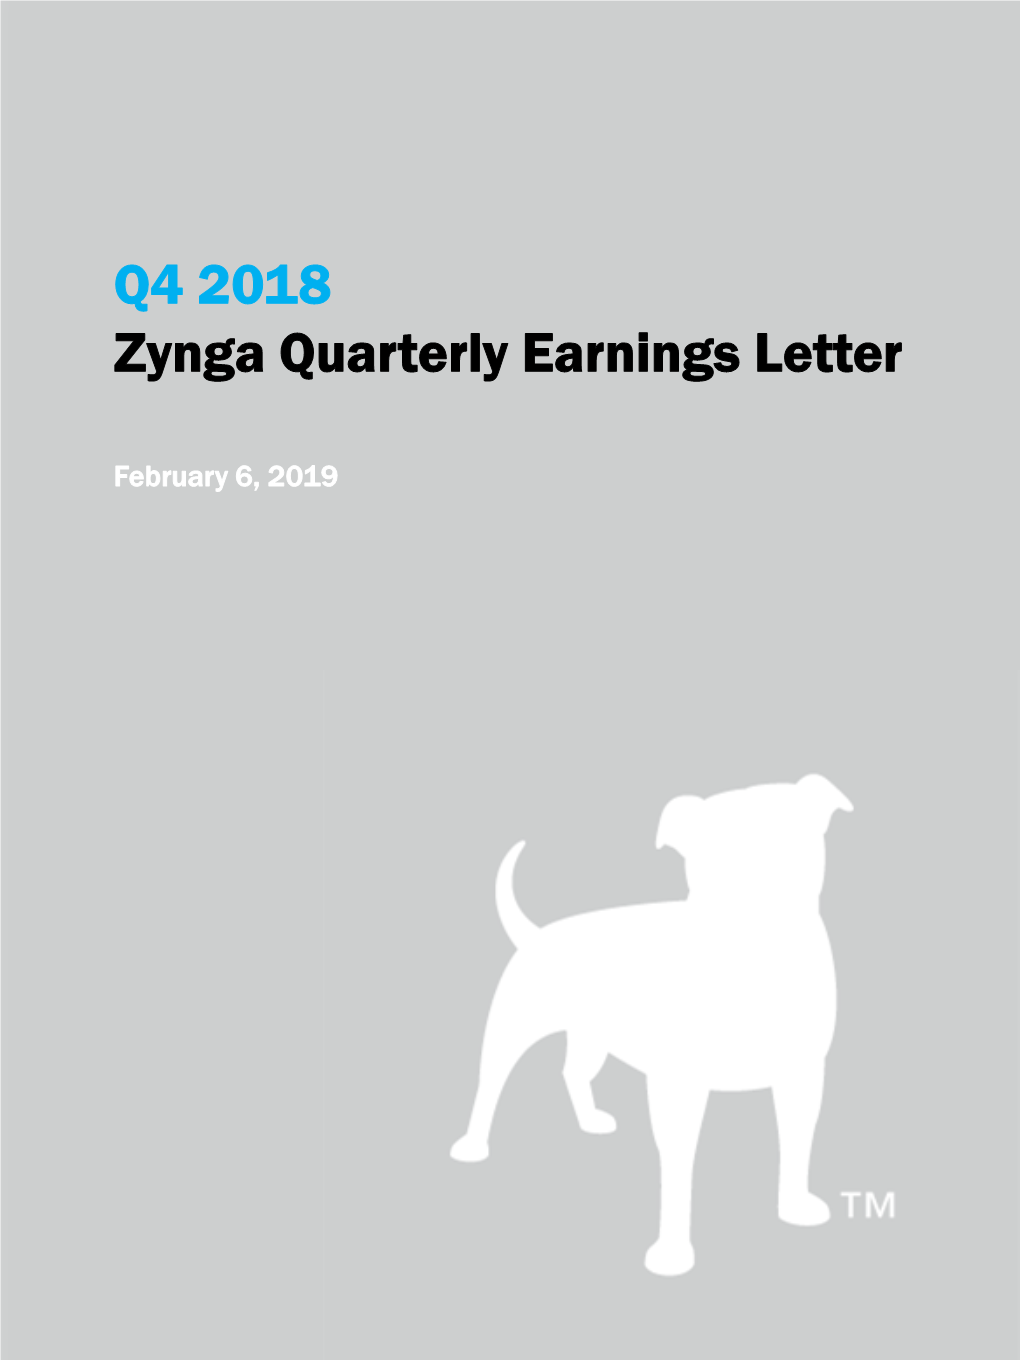 Q4 2018 Quarterly Earnings Letter